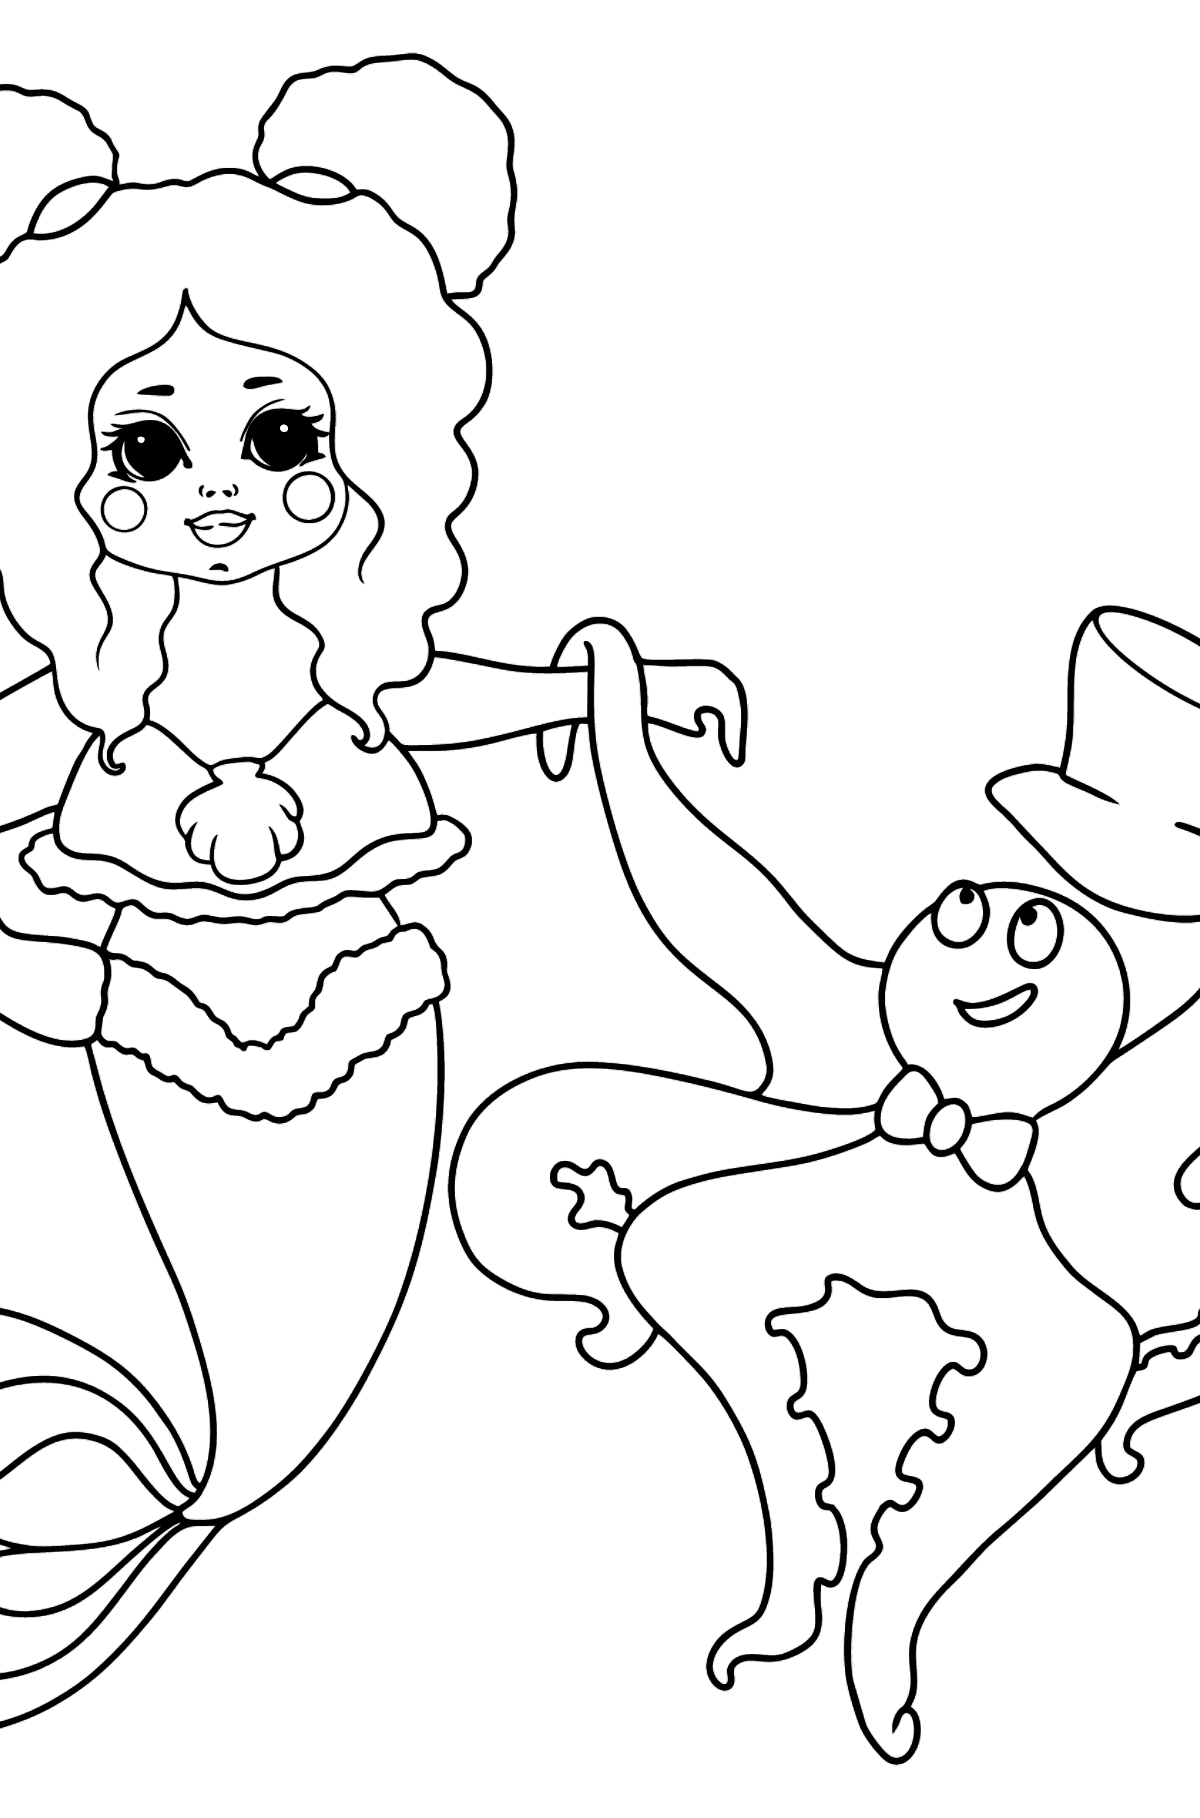 Meerjungfrau und Krake Ausmalbild - Malvorlagen für Kinder